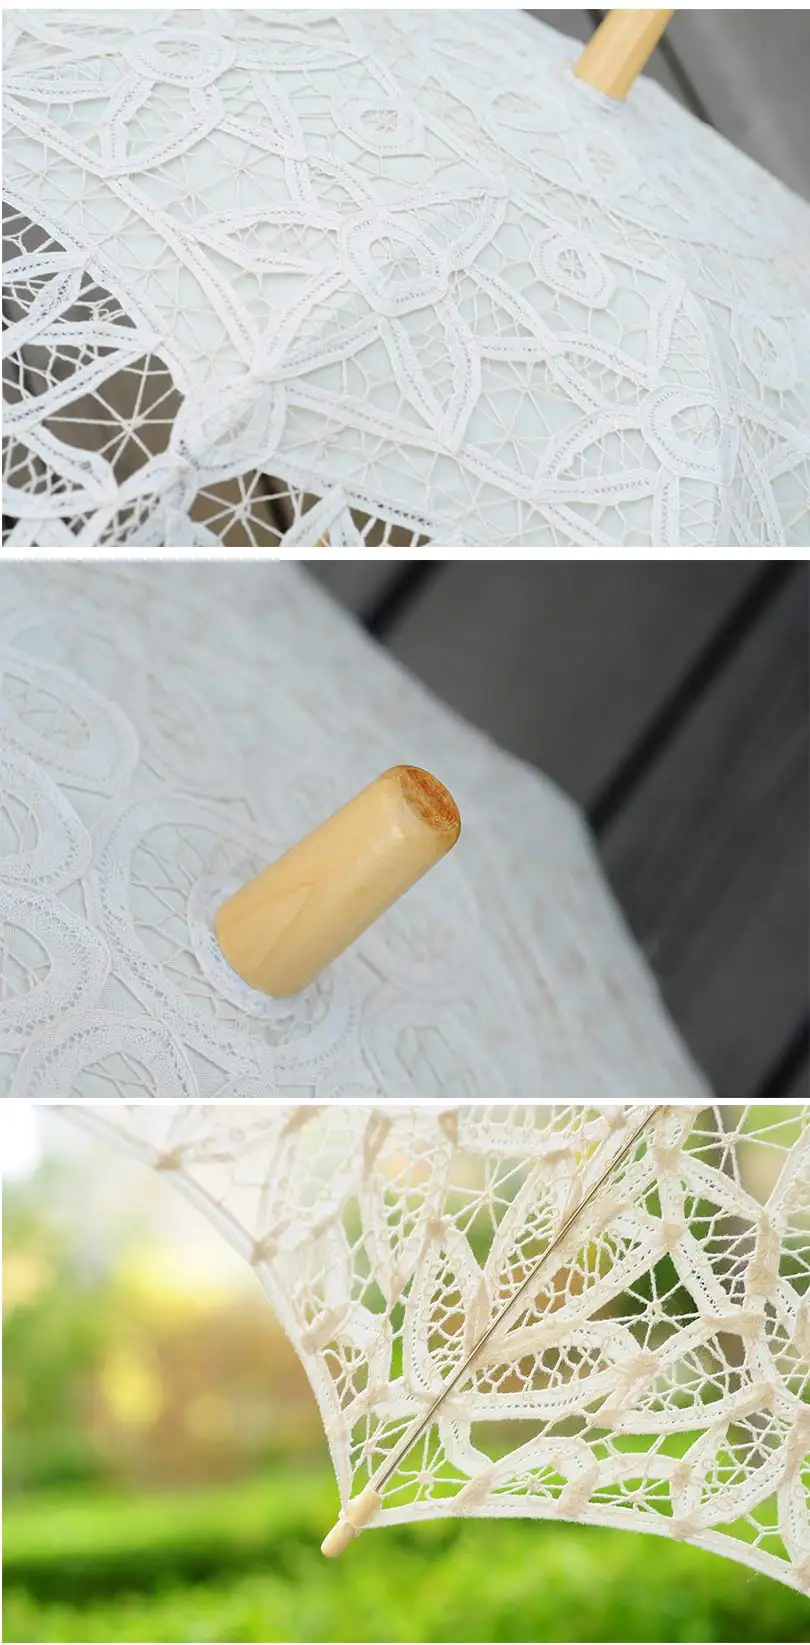 QUNYINGXIU Craft кружева бежевый зонт ручной работы из хлопка танец фотографии украшение свадебное путешествие Солнечный Ocean зонтик